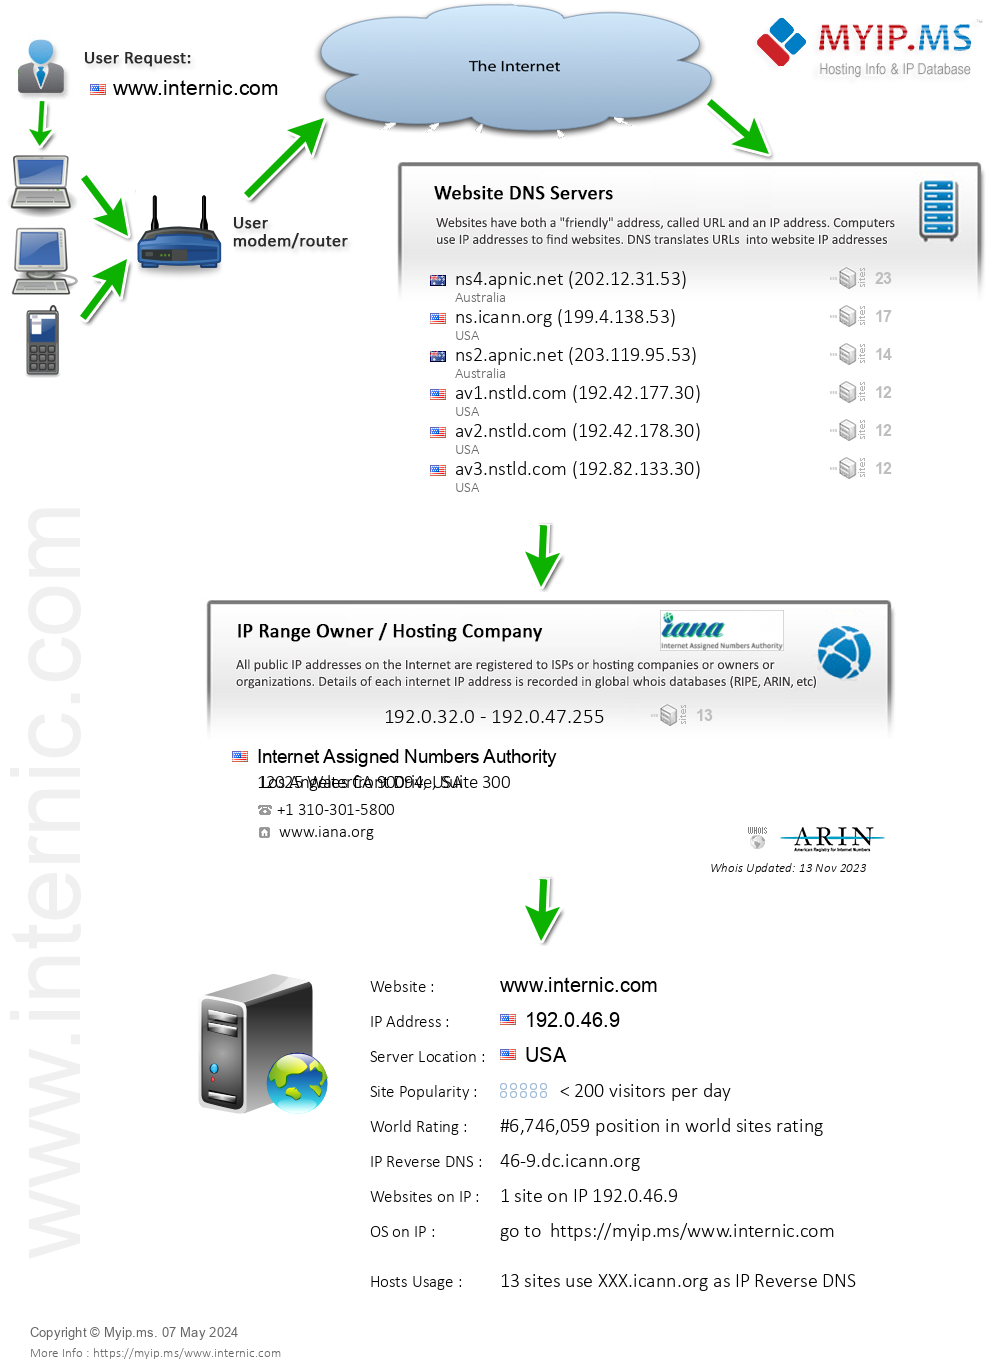 Internic.com - Website Hosting Visual IP Diagram